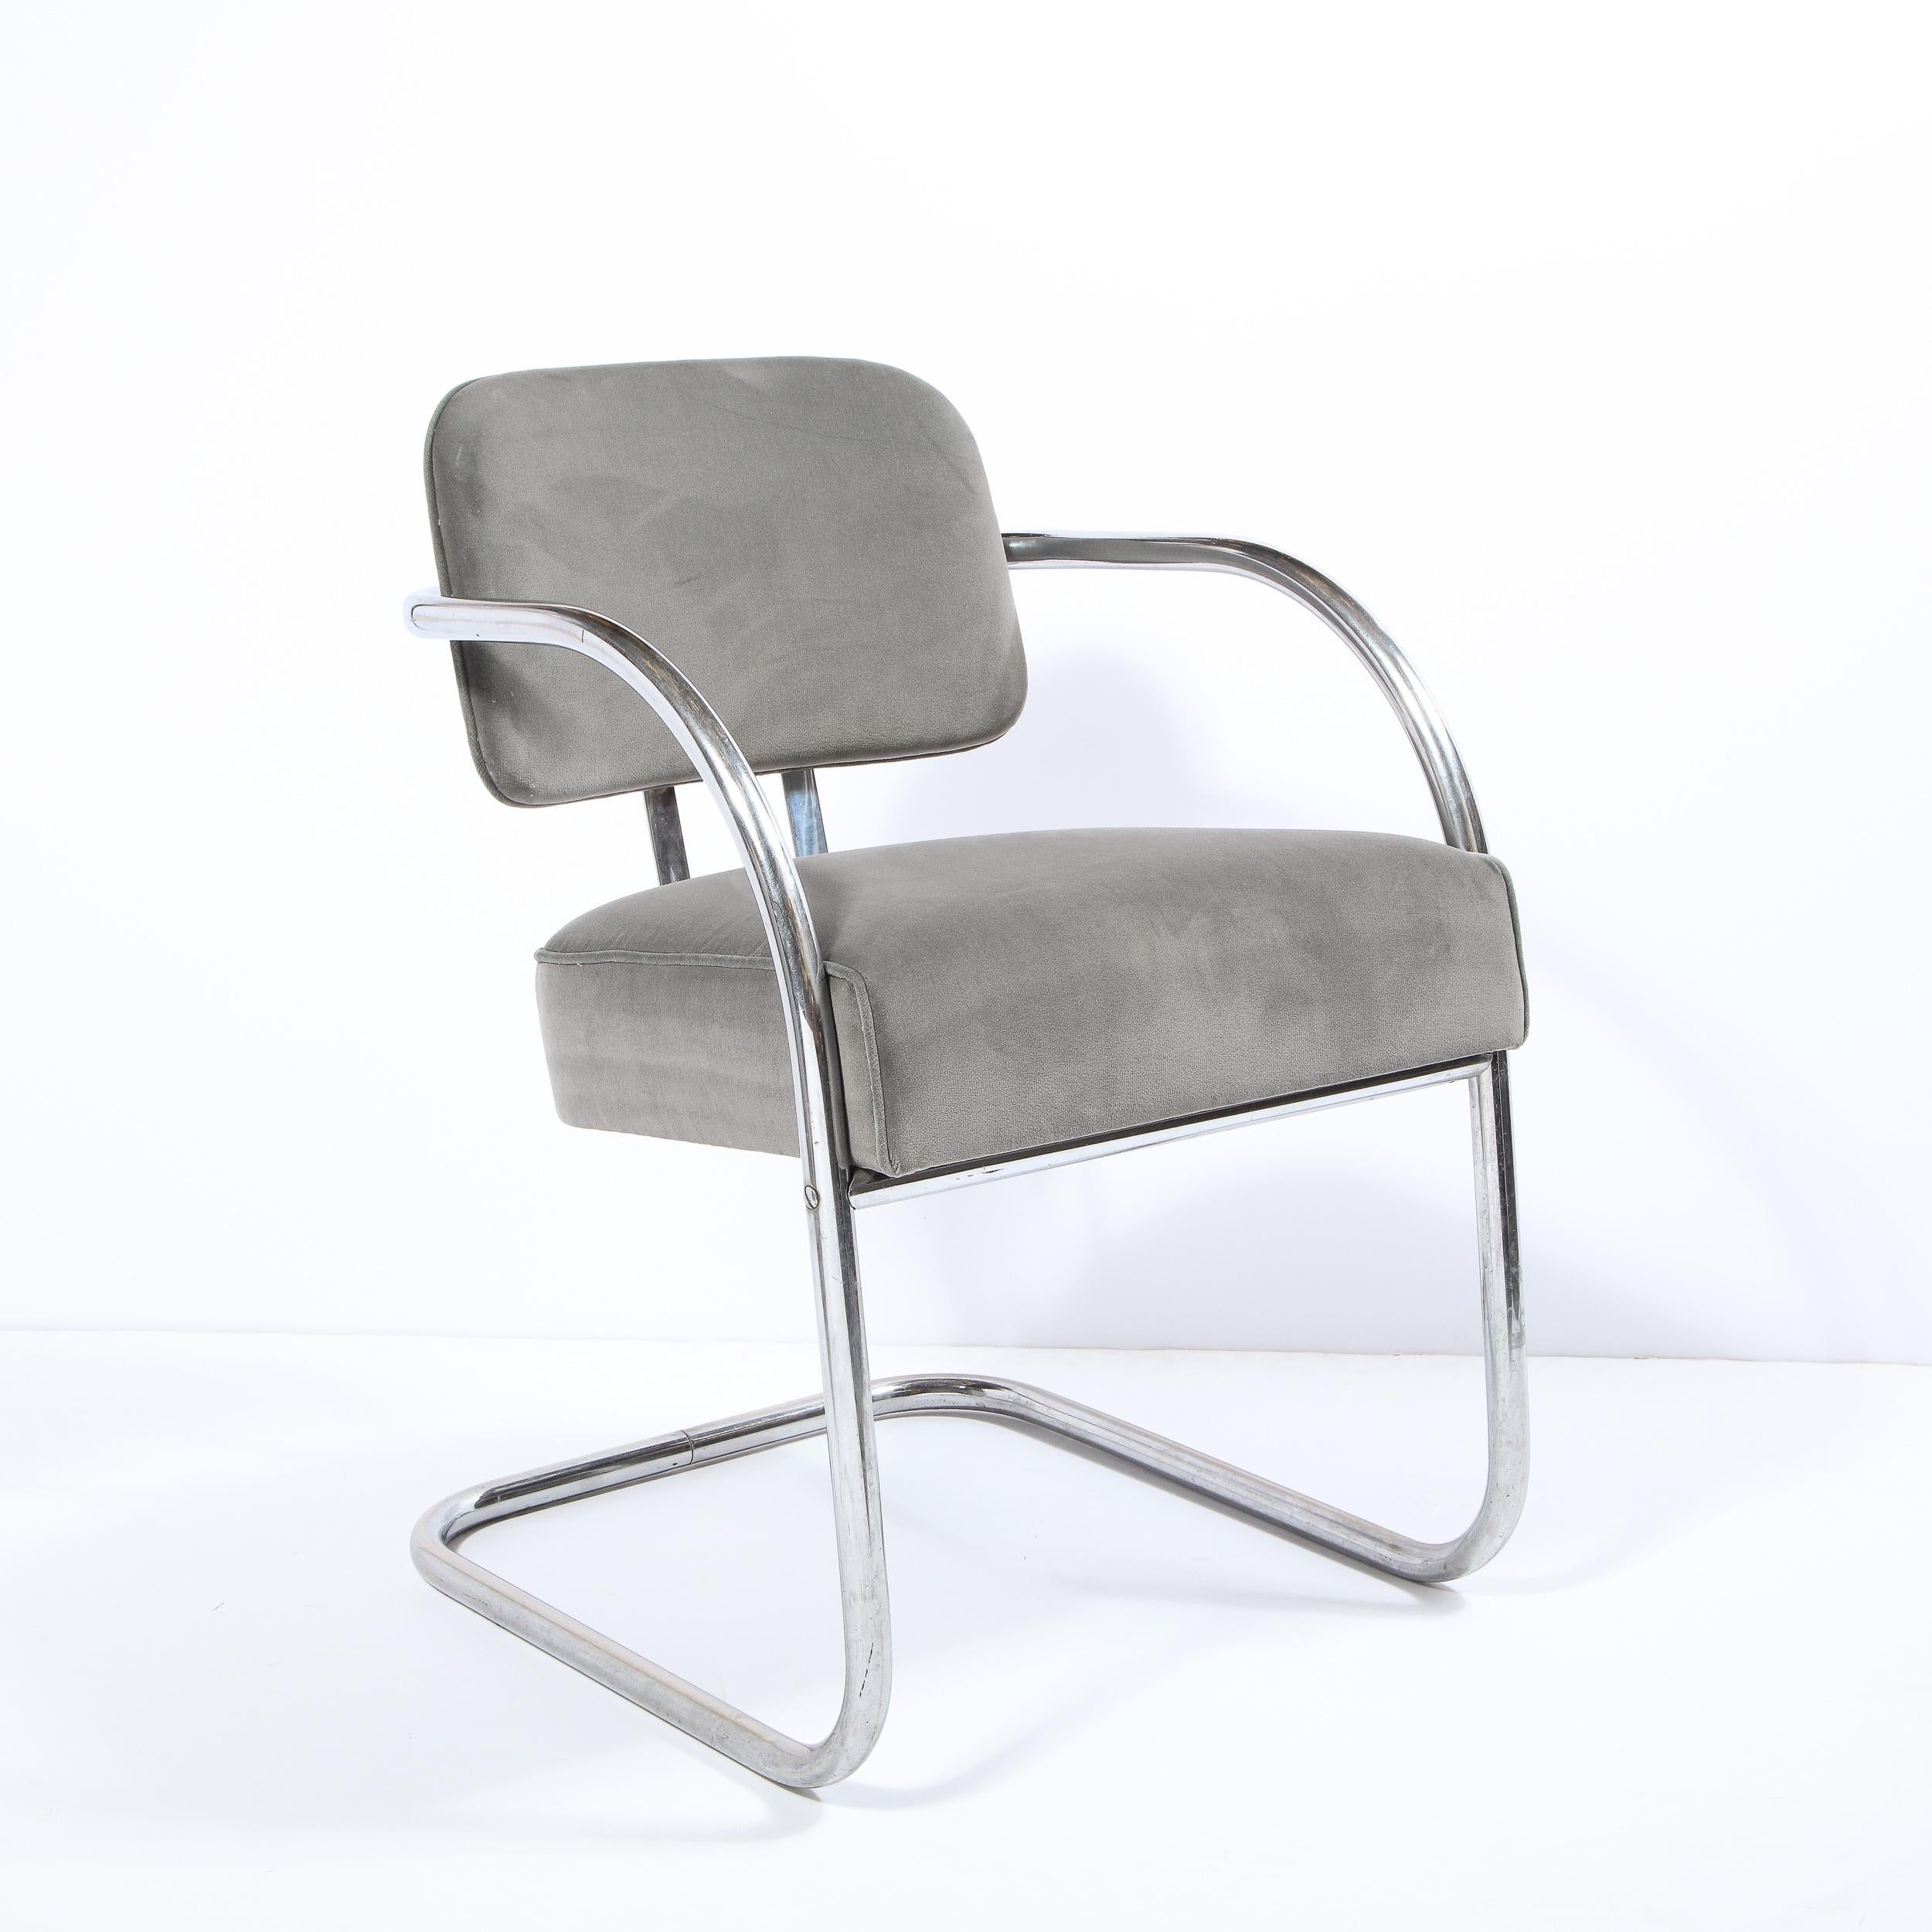 Dieser raffinierte Art Deco Beistellstuhl aus dem Maschinenzeitalter wurde um 1935 in den Vereinigten Staaten hergestellt. Er verfügt über einen subtil auskragenden, gebogenen Aluminiumrohrrahmen mit einer schwebenden Rückenlehne,